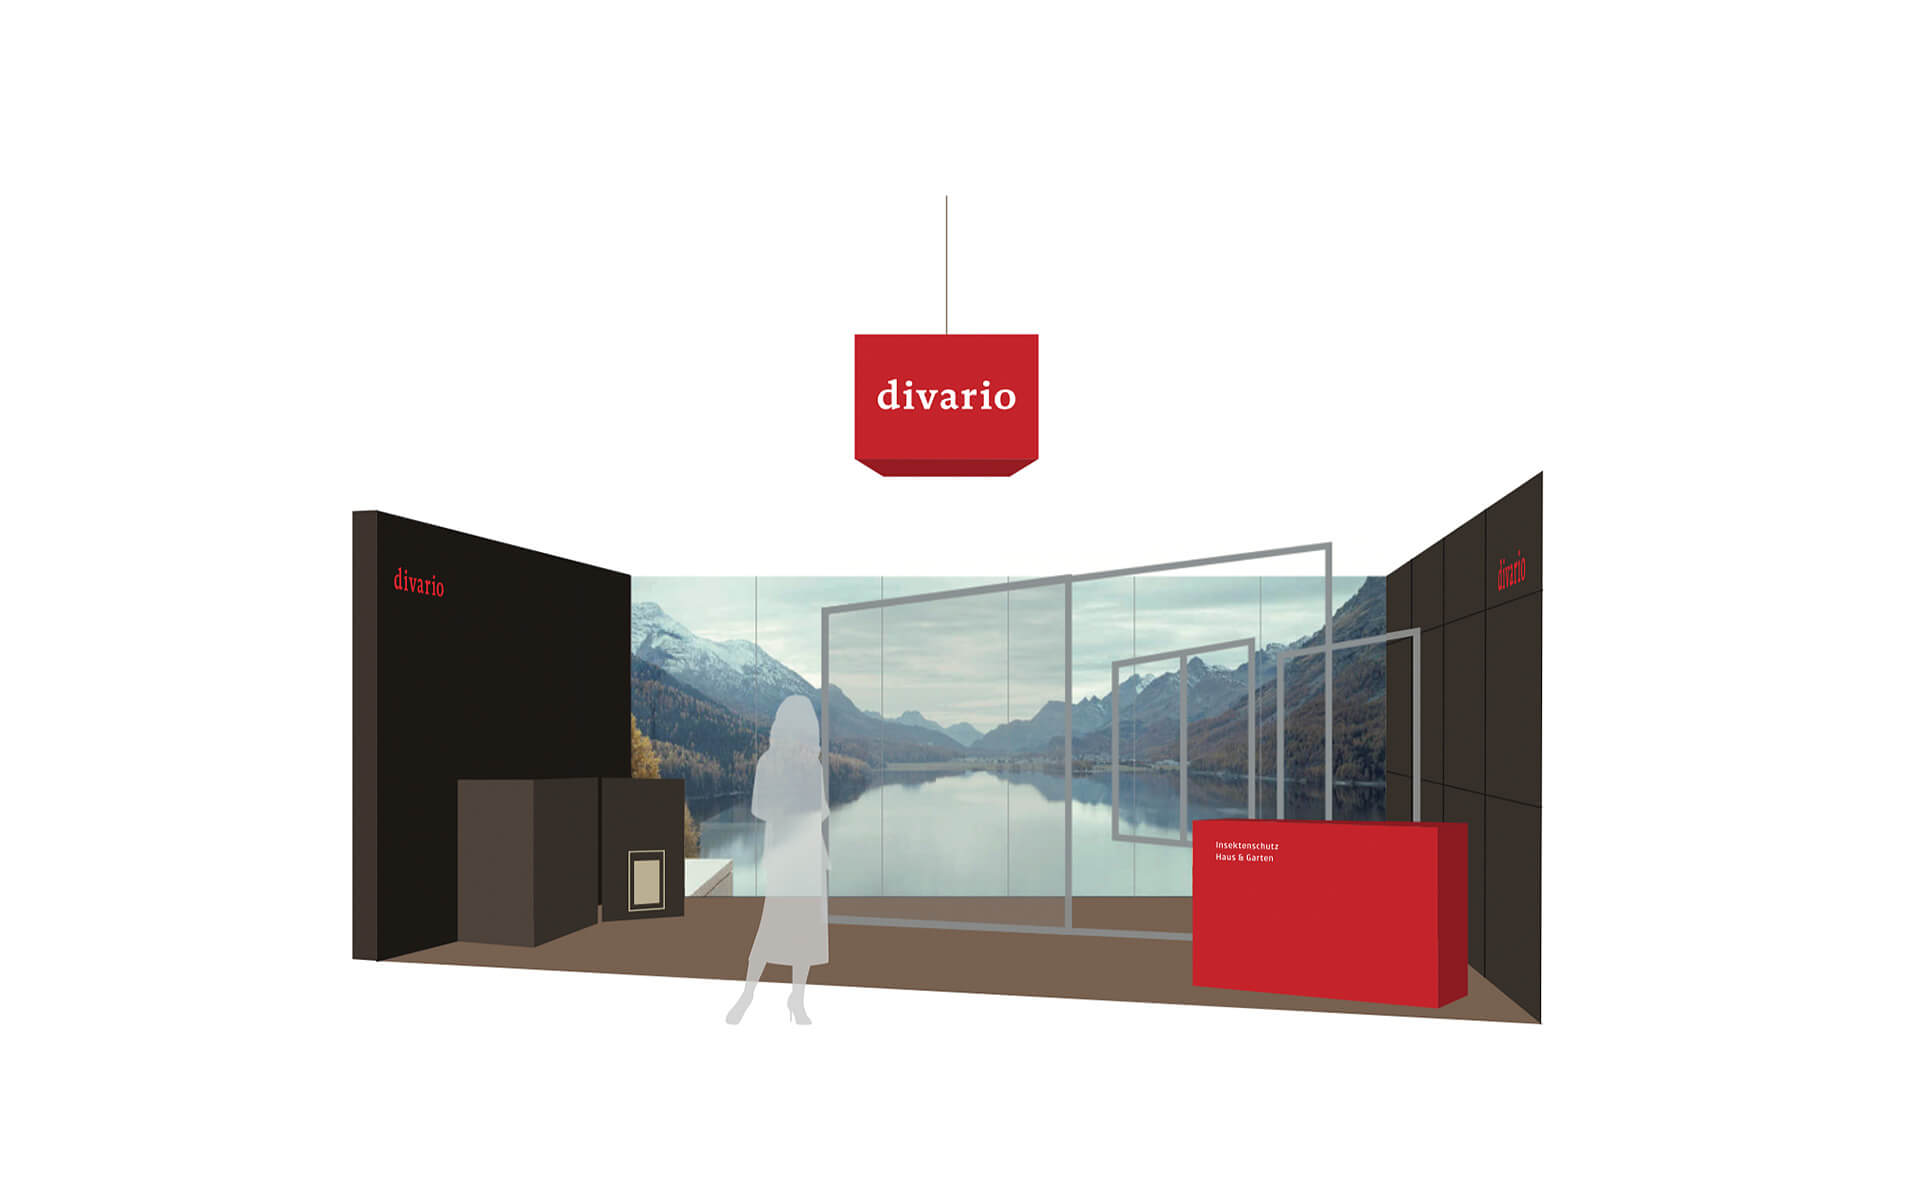 Perspektivische Grafik, Messestand an OLMA, Messe-Design für divario Insektenschutz von EightyNine, Agentur für Corporate Design und Grafik in St. Gallen, Schweiz